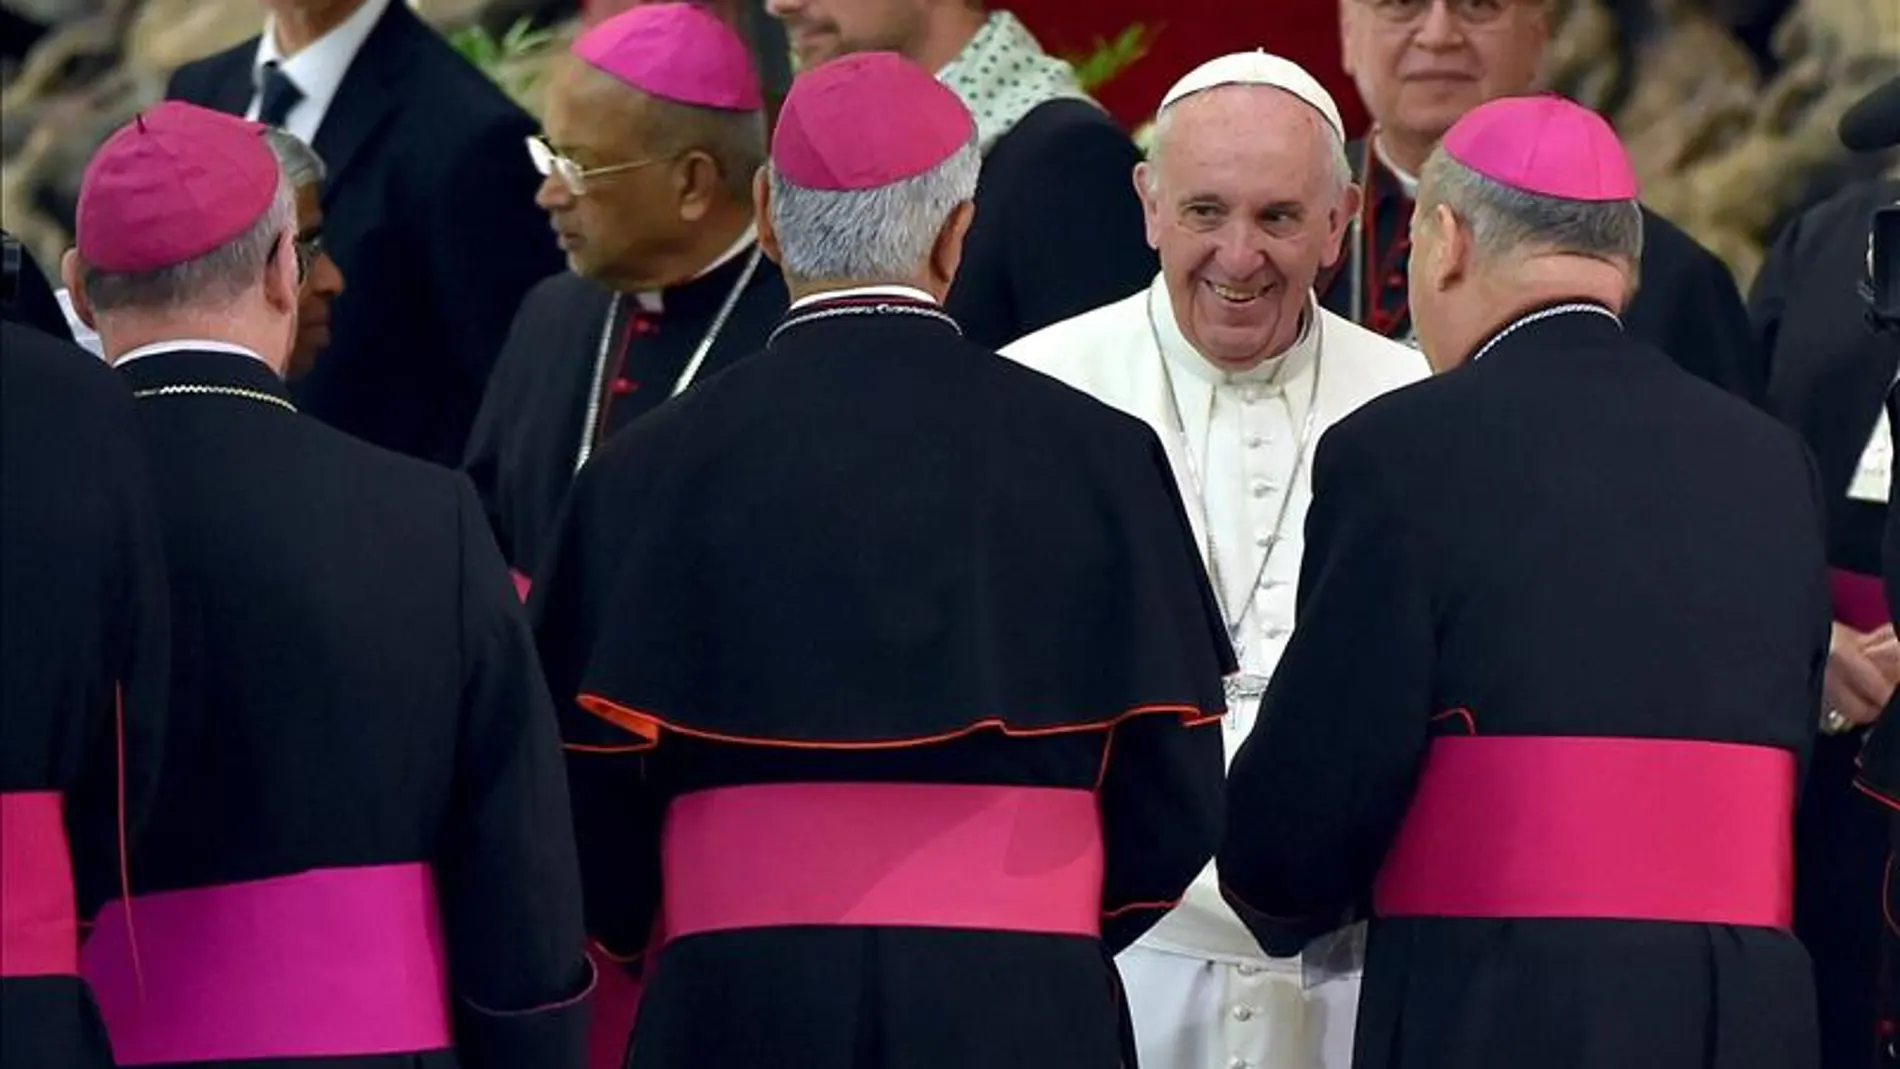 El papa francisco conversa con obispos